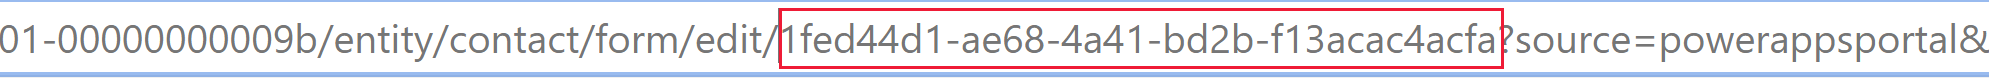 Skjema-ID-en finnes i URL-adressen til nettleseren når du åpner et skjema i den moderne skjemautformingen.